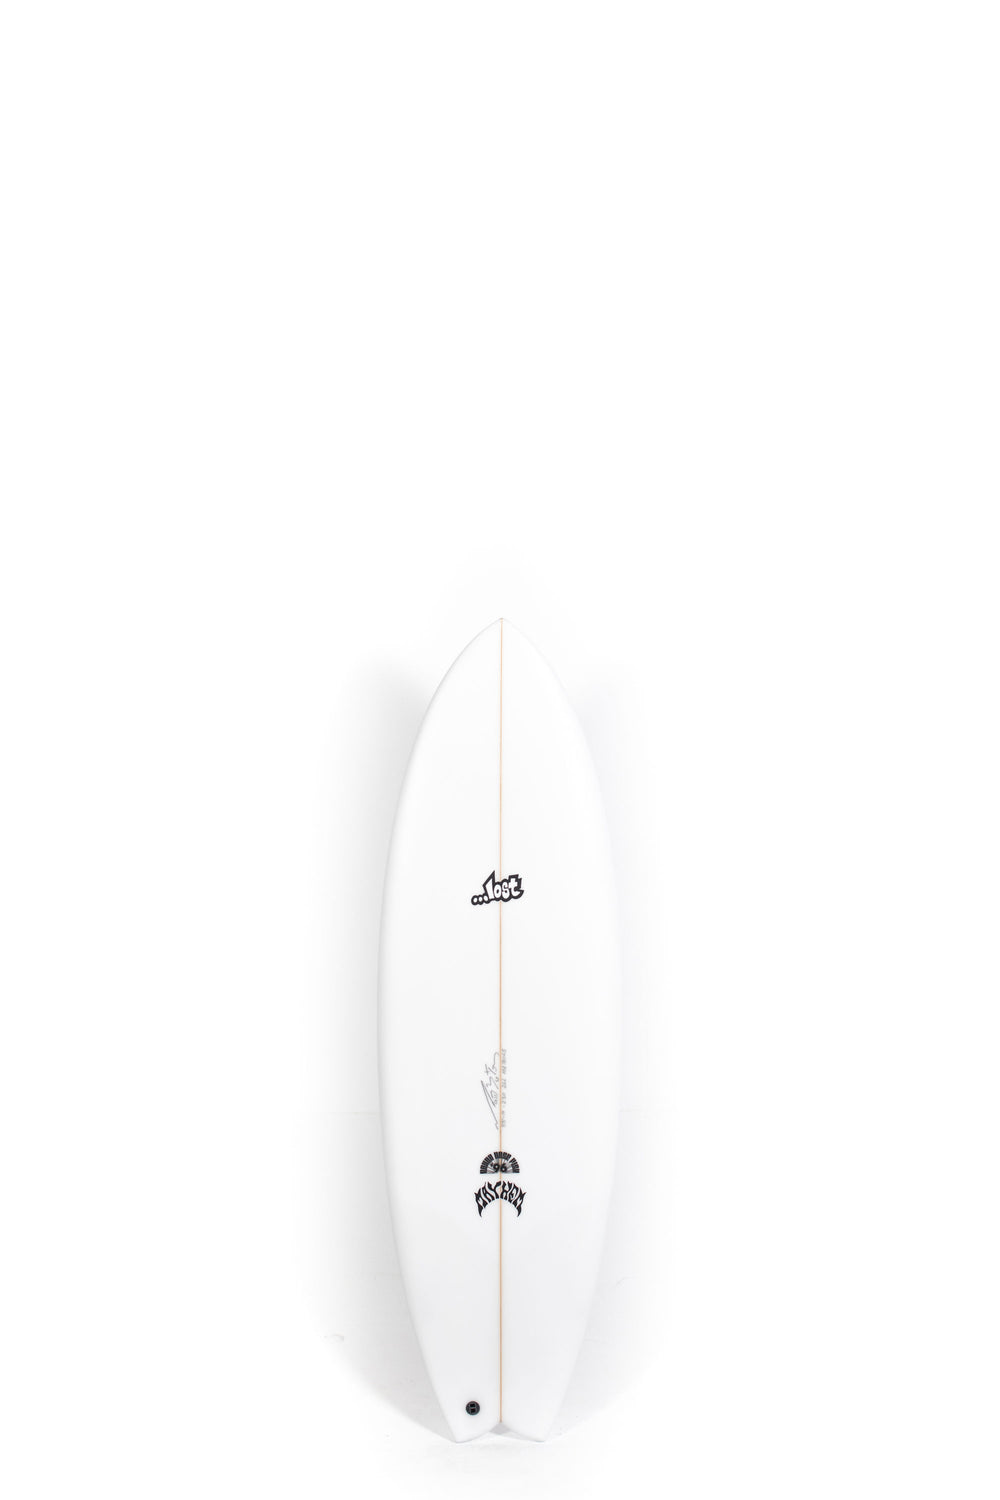 Lost Surfboard RNF 96 by Matt Biolos at PUKAS SURF SHOP